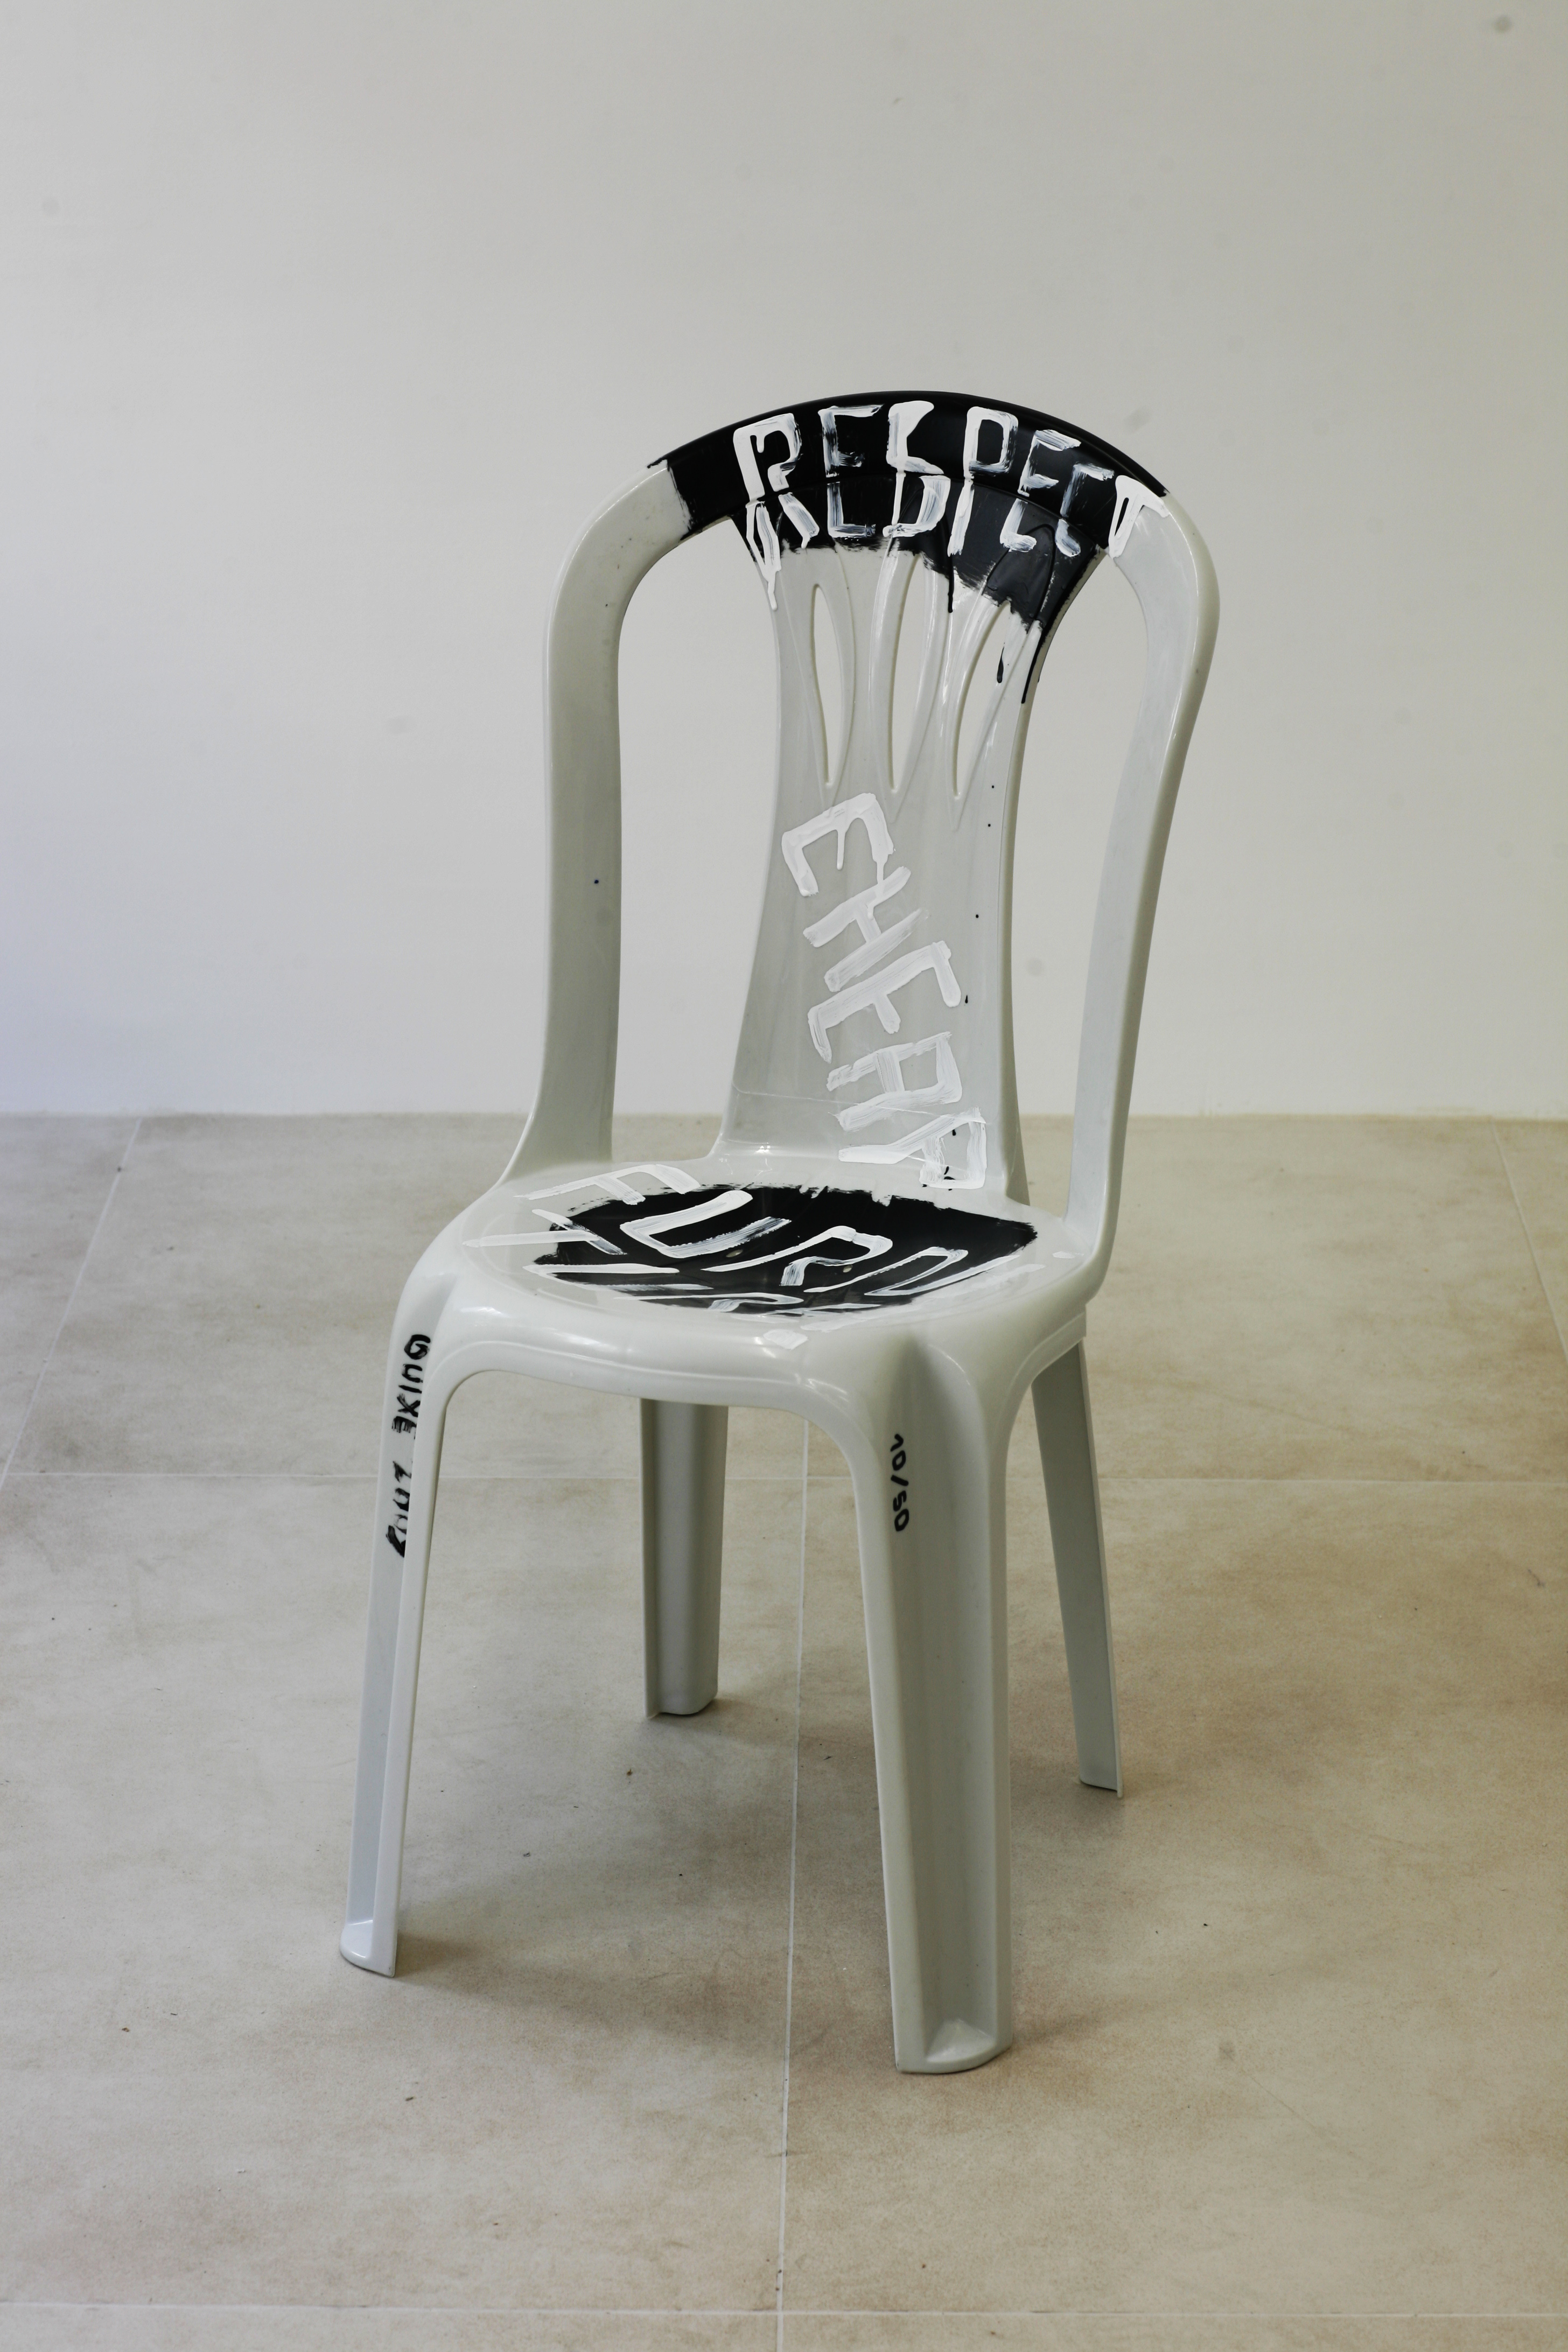 Respect Cheap Furniture Monobloc Chair N 10 50 Adorno